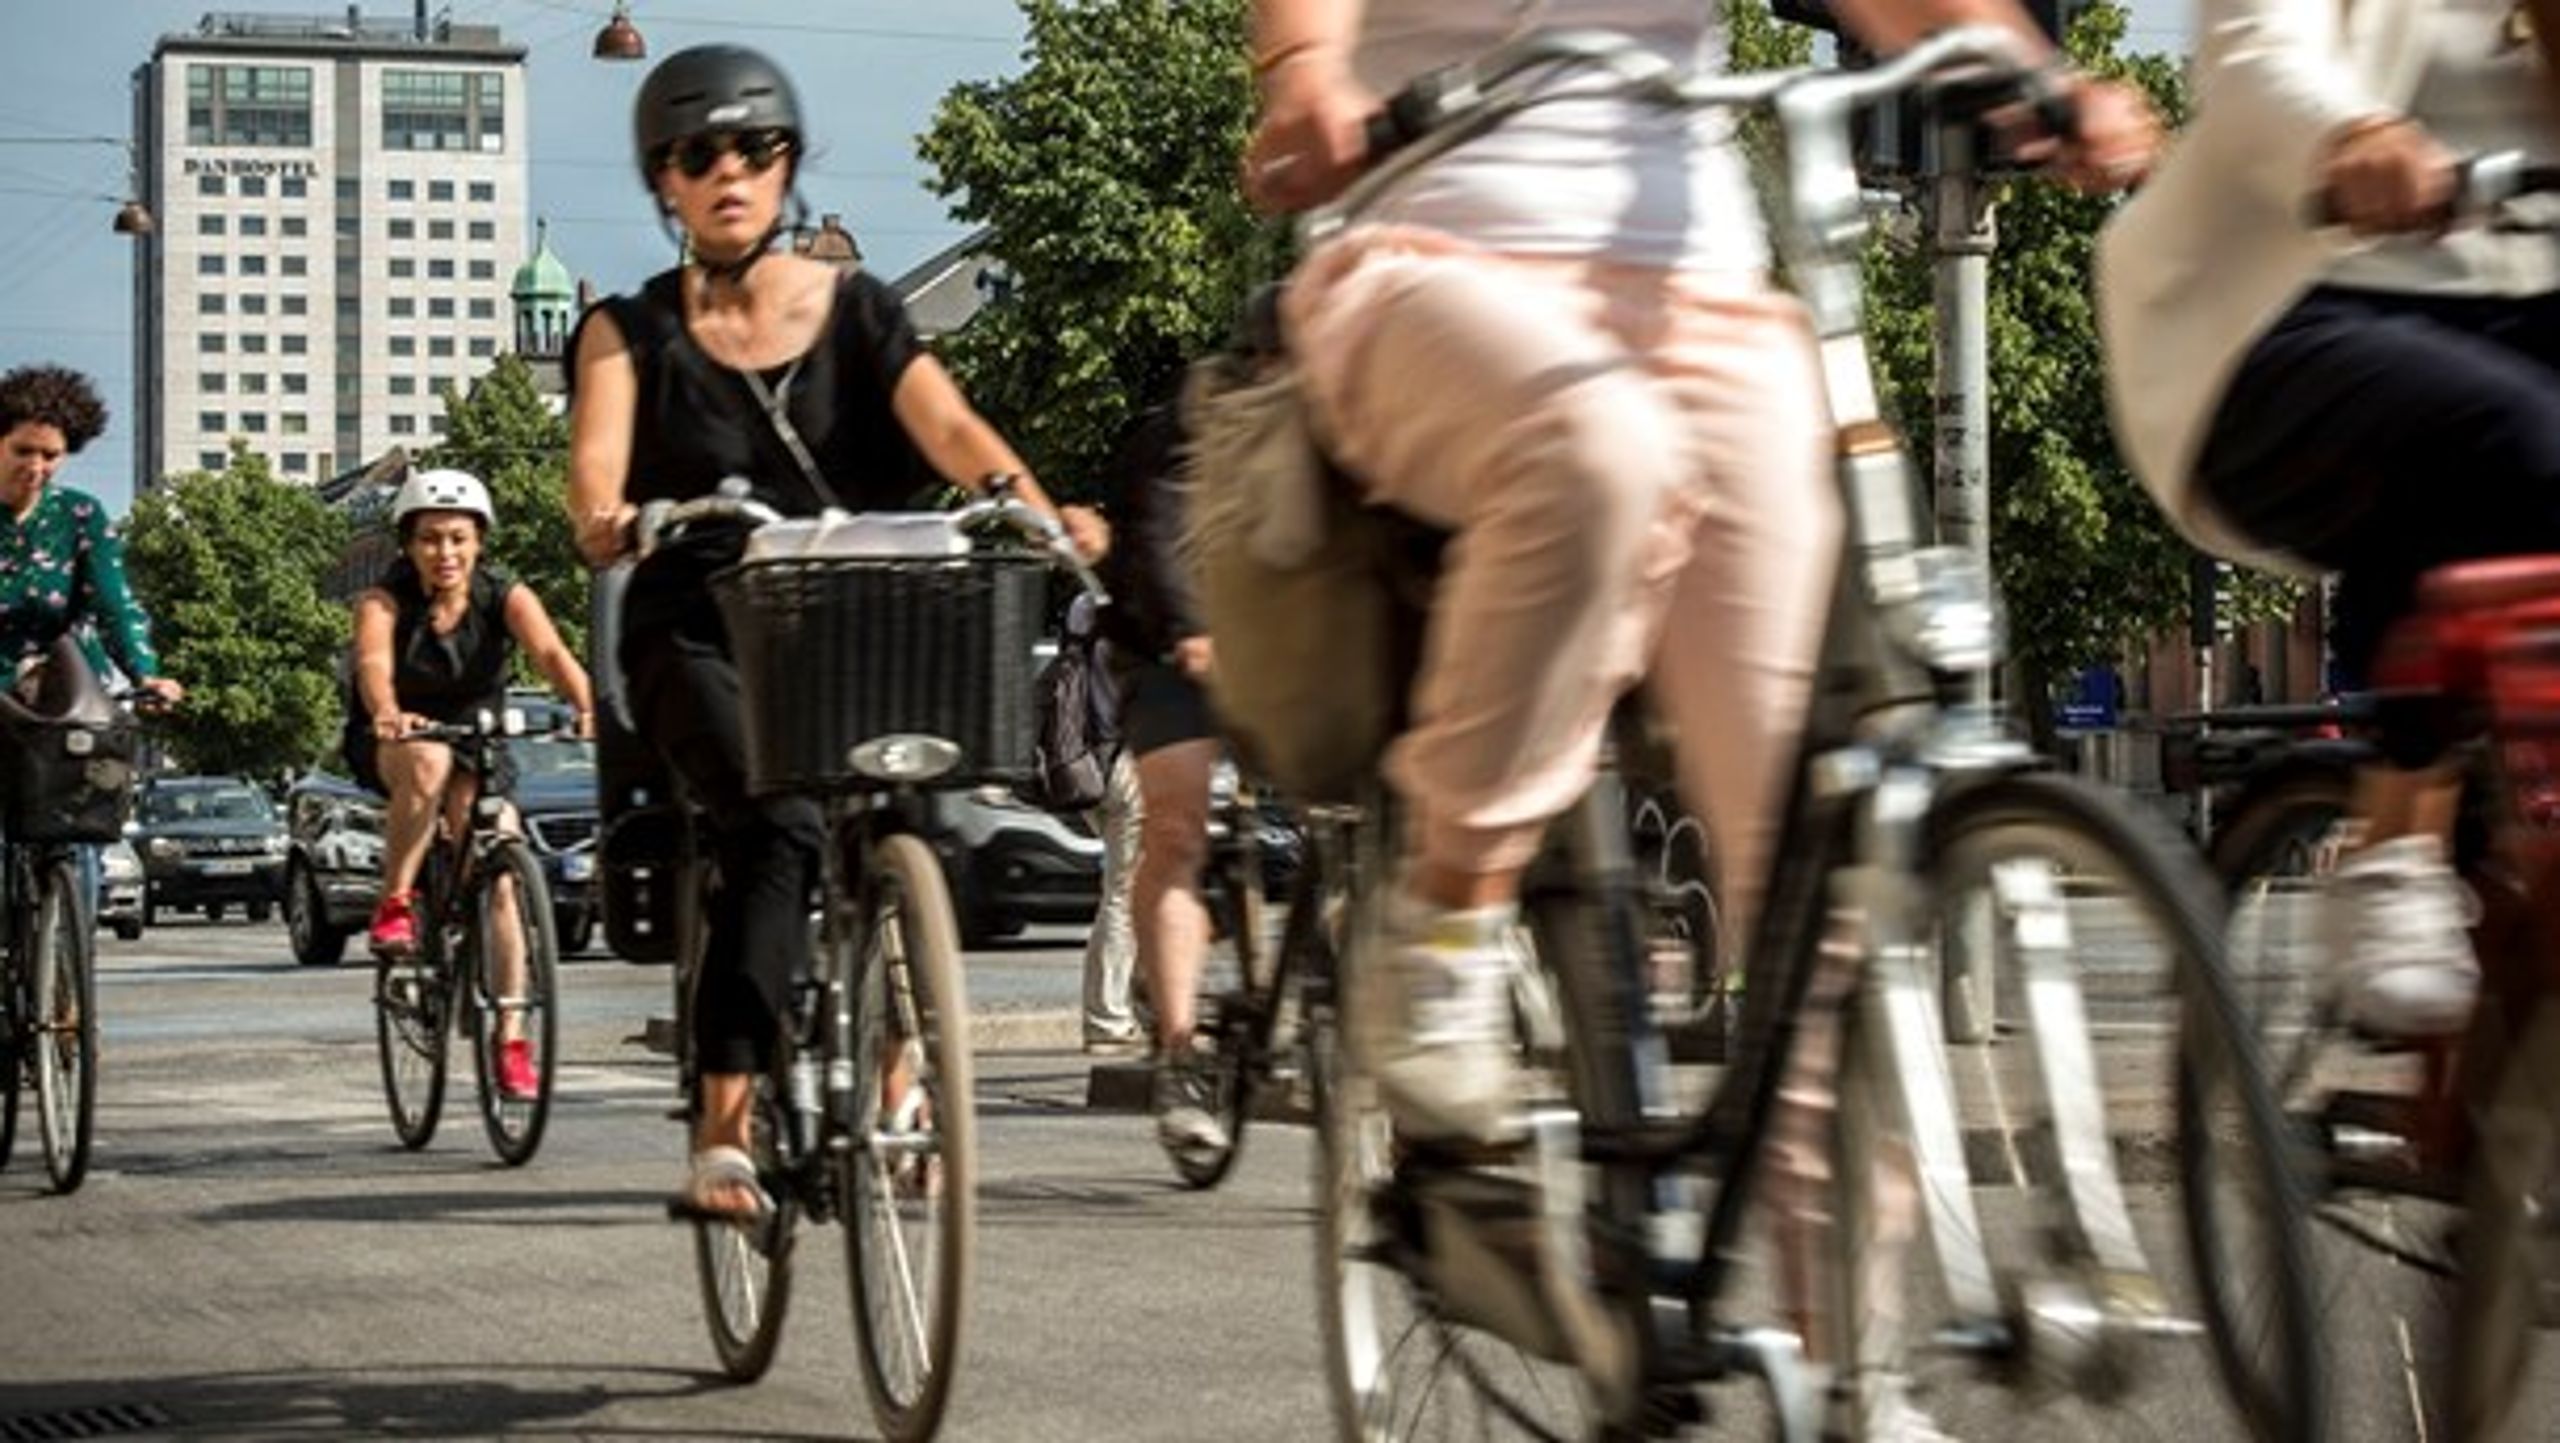 En af de bedste måder at flytte trafik fra bil til cykel er forbedringer af cykelstier. Derfor opfordrer Cyklistforbundet til en ny national cykelpulje, der kan lokke flere op på jernhesten.